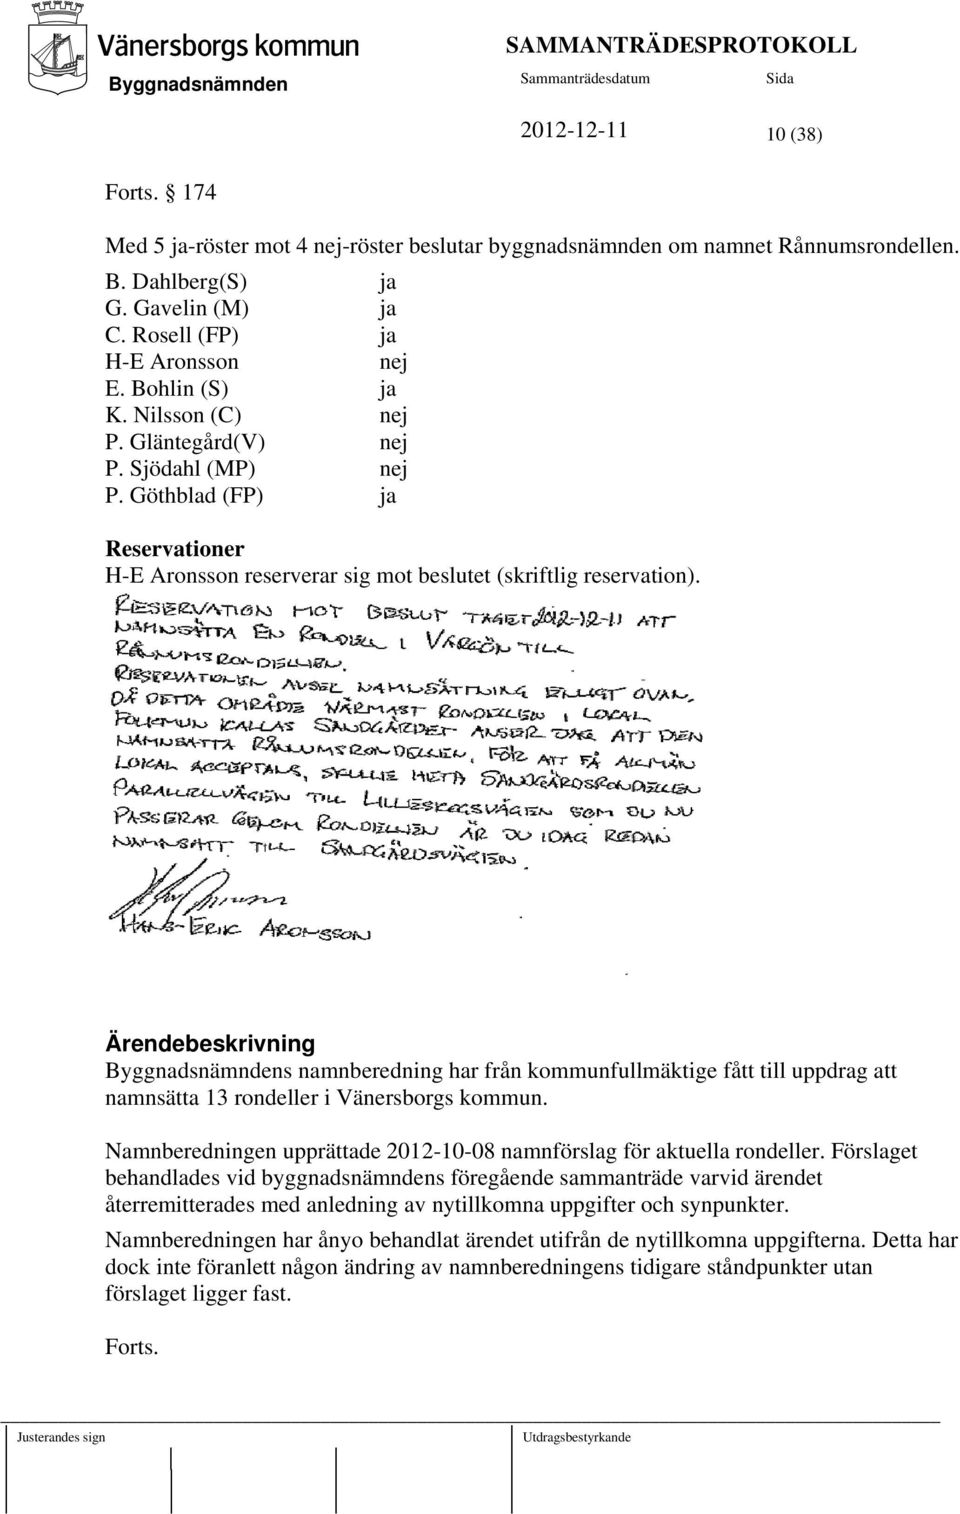 Ärendebeskrivning s namnberedning har från kommunfullmäktige fått till uppdrag att namnsätta 13 rondeller i Vänersborgs kommun.